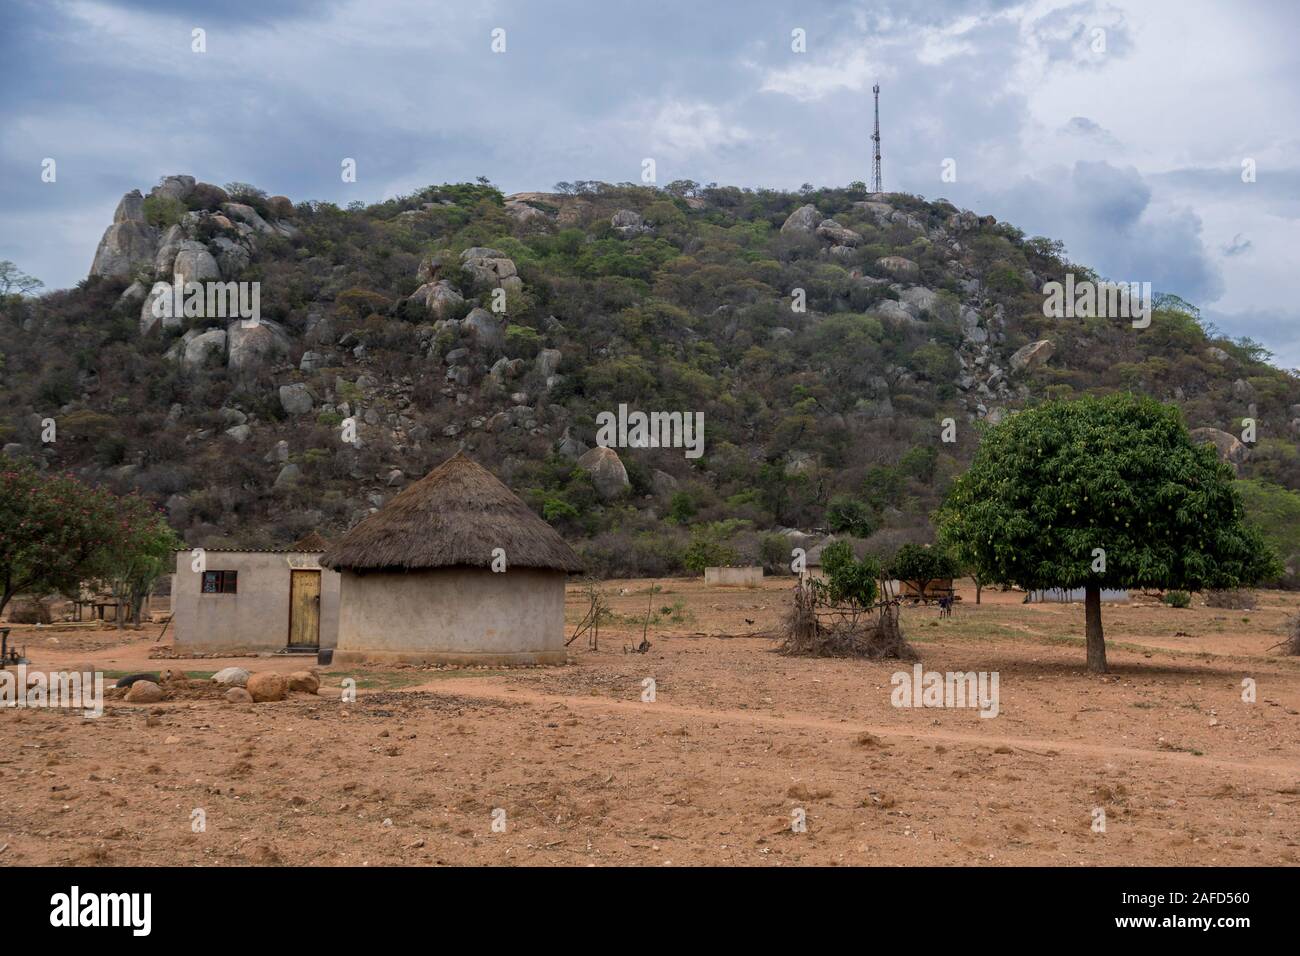 PZimbabwe. Dzapasi Assembly Point (AP Foxtrot) National Monument, am Standort des größten Guerilla-Montagepunkts nach dem Waffenstillstand von 1979 zwischen der Regierung von Simbabwe und der ZANLA- und ZIPRA-Guerillabewegung. Stockfoto